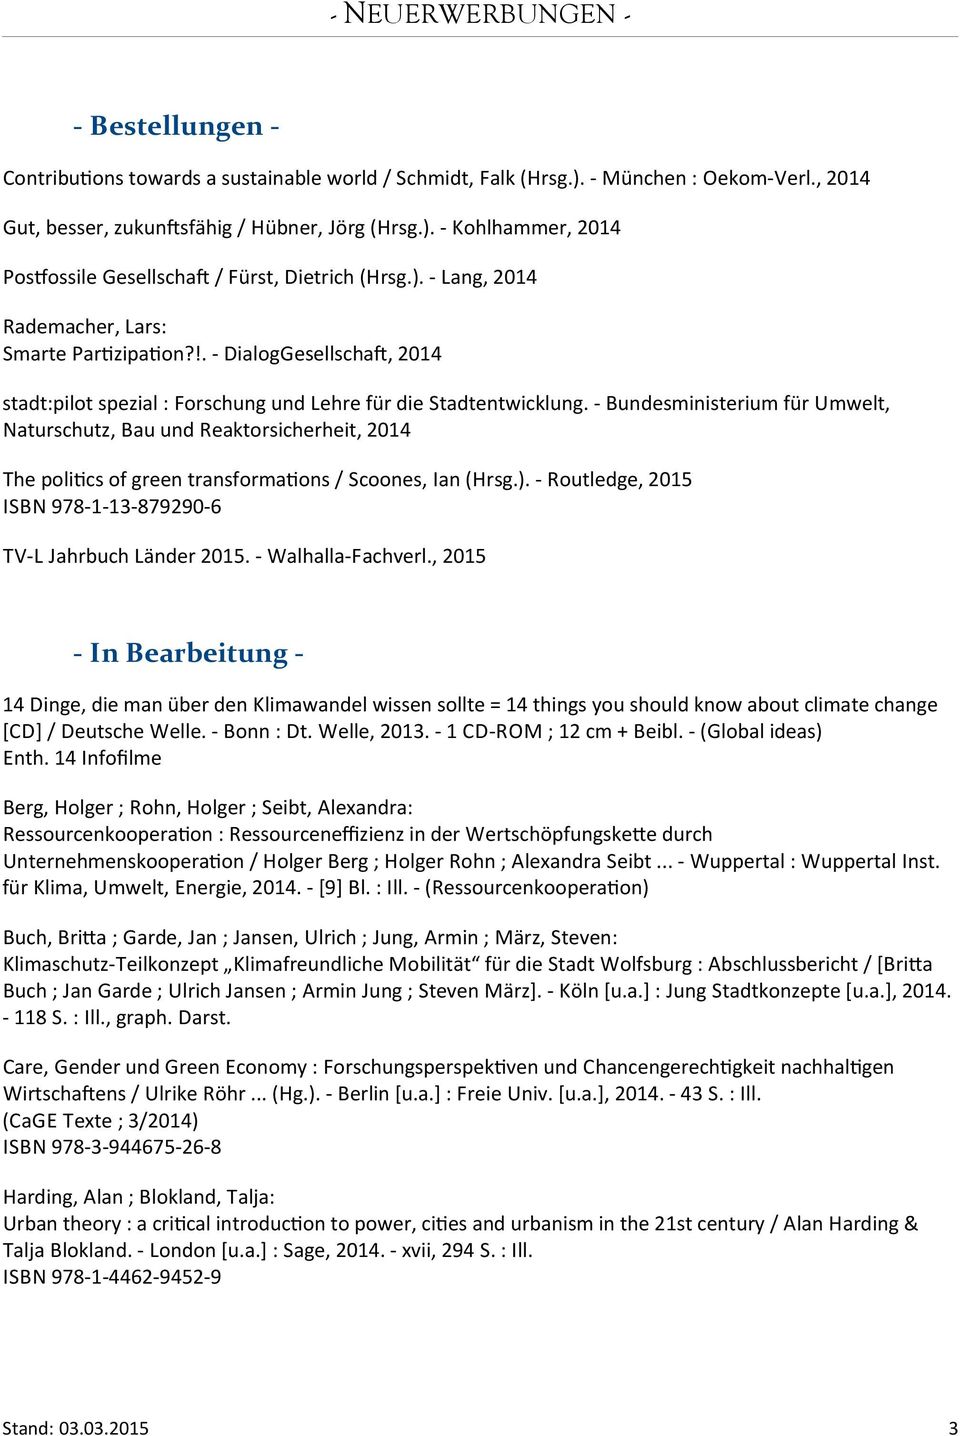 - Bundesministerium für Umwelt, Naturschutz, Bau und Reaktorsicherheit, 2014 The politcs of green transformatons / Scoones, Ian (Hrsg.).